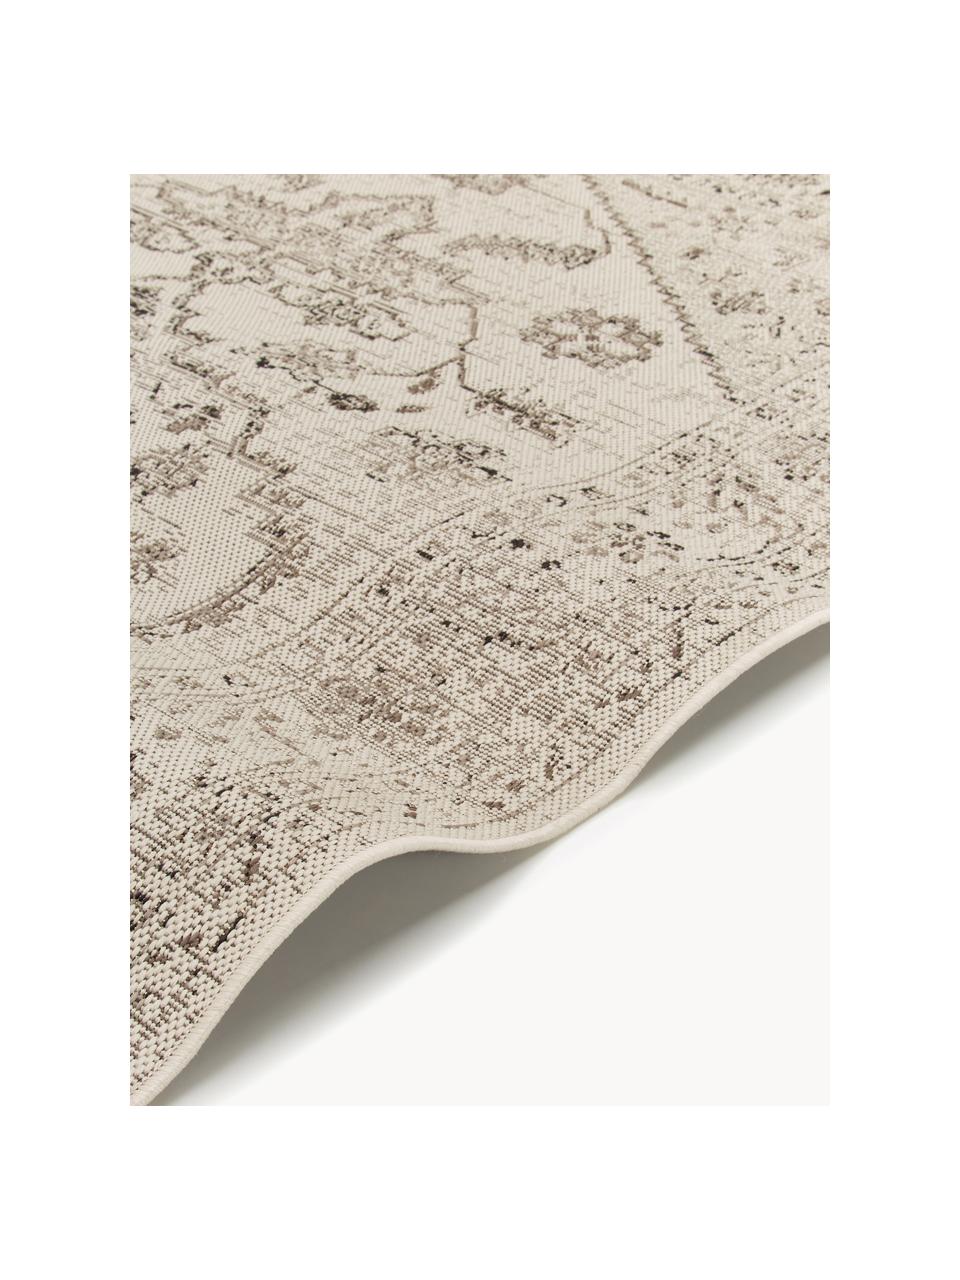 Interiérový/exteriérový koberec Navarino, 100 % polypropylen, Odstíny béžové, Š 80 cm, D 150 cm (velikost XS)